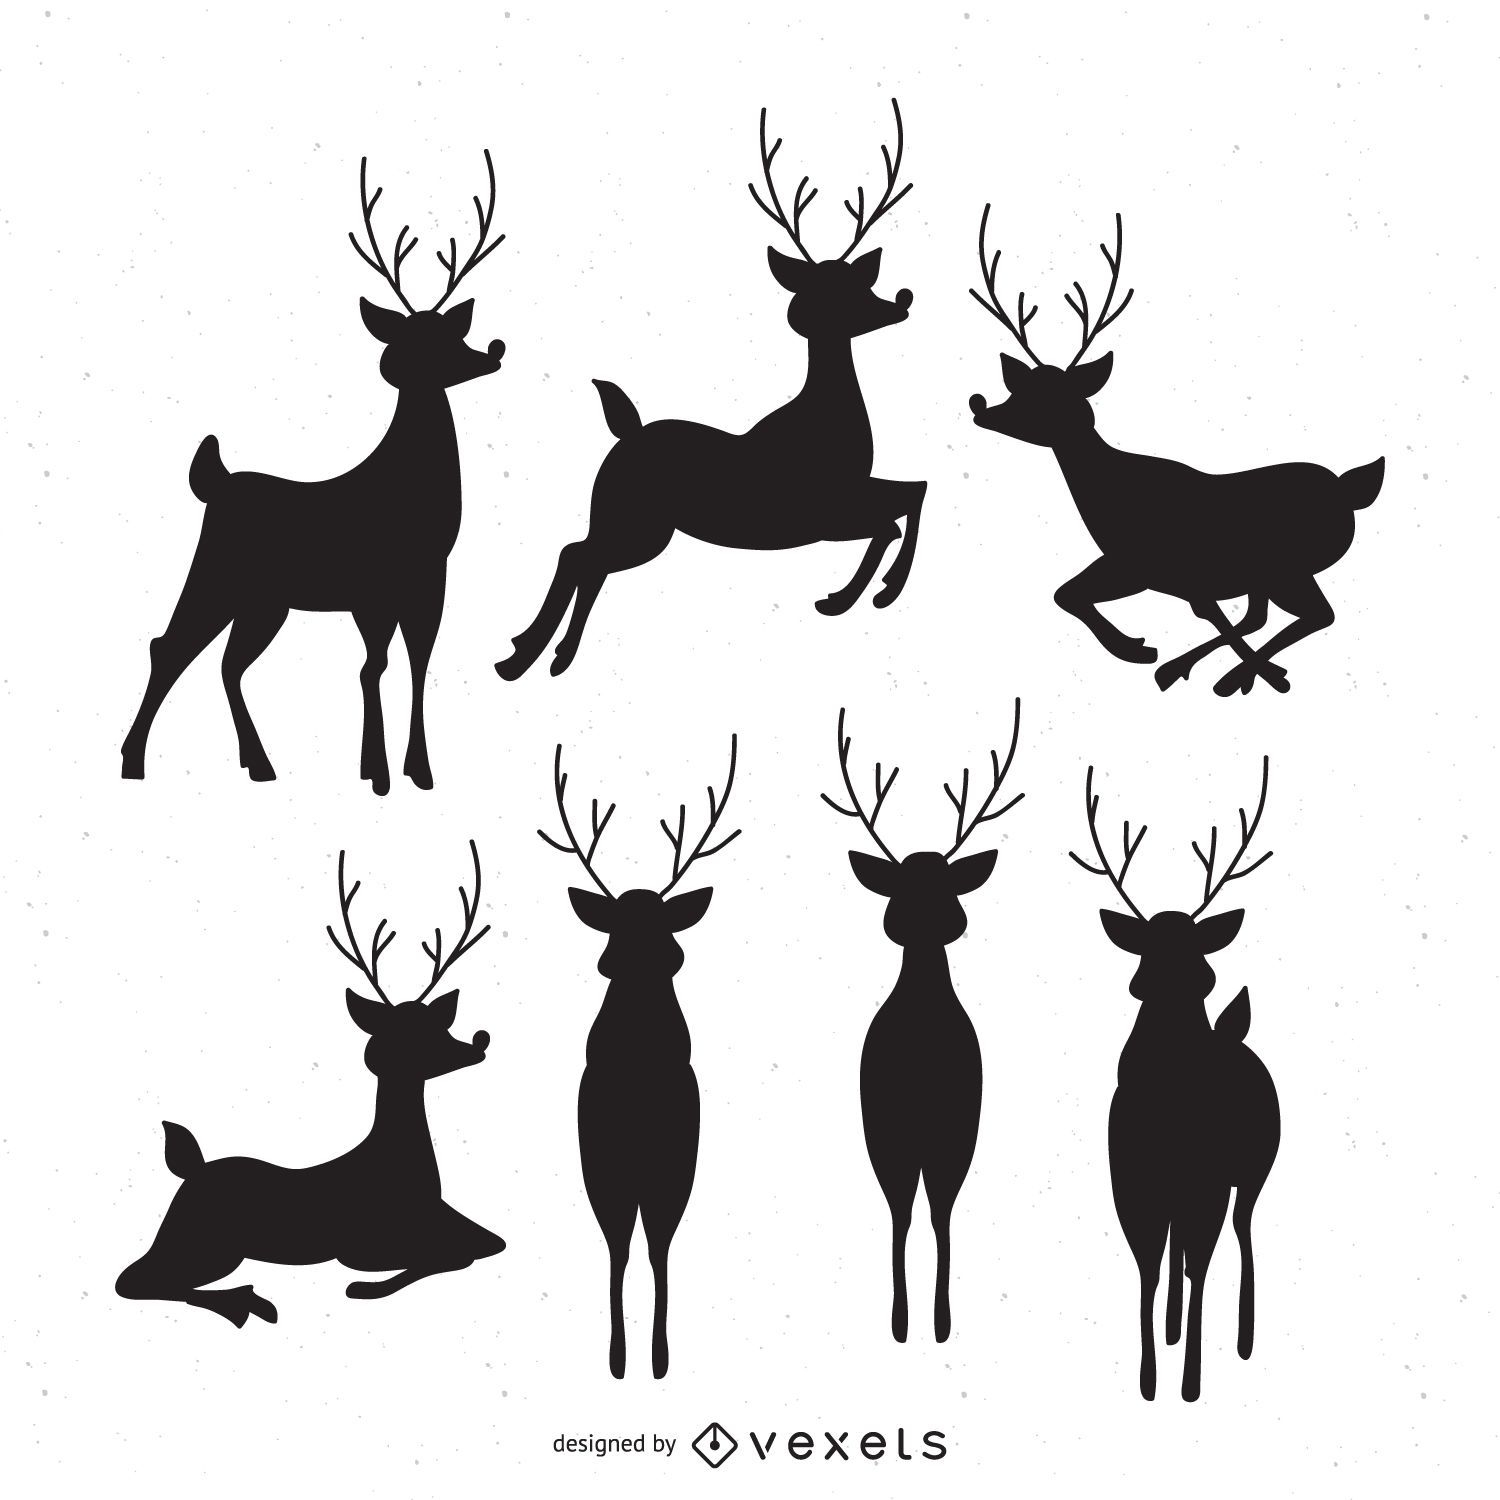 7 deer silhouettes set